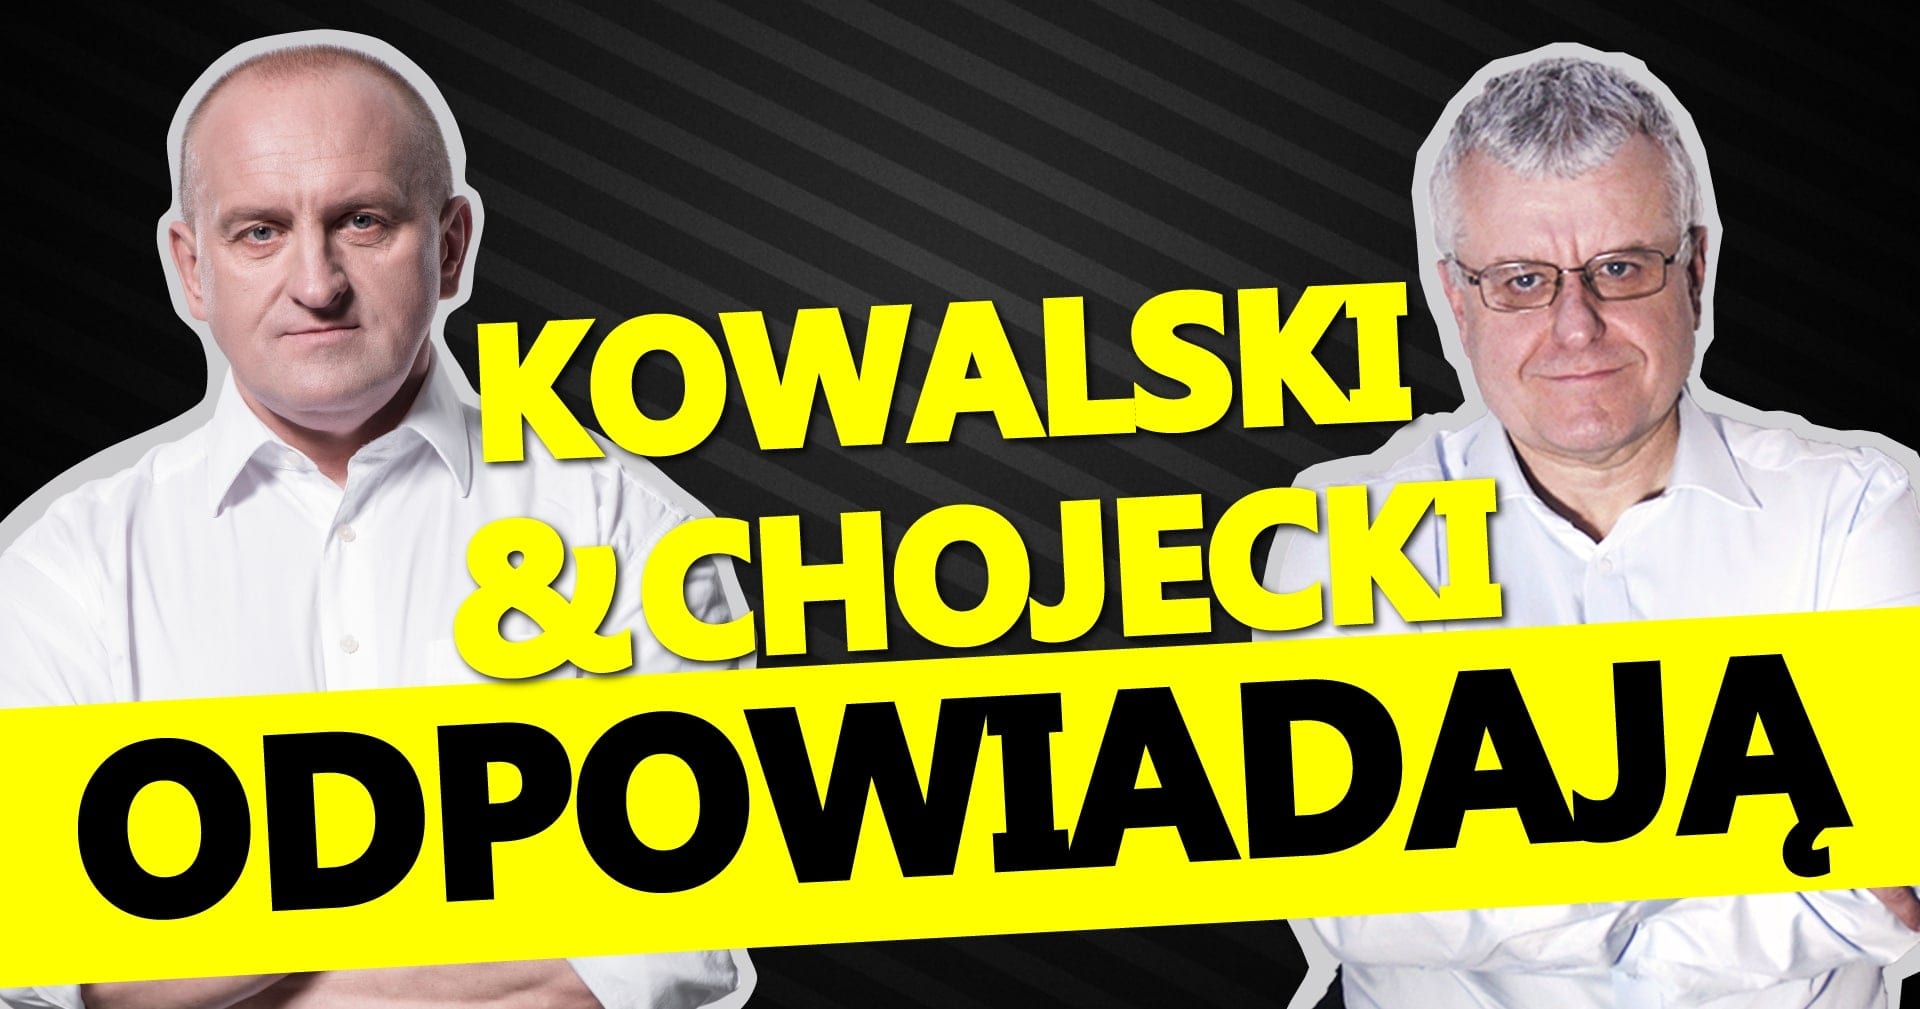 Kowalski &Chojecki odpowiadają – zobacz całość